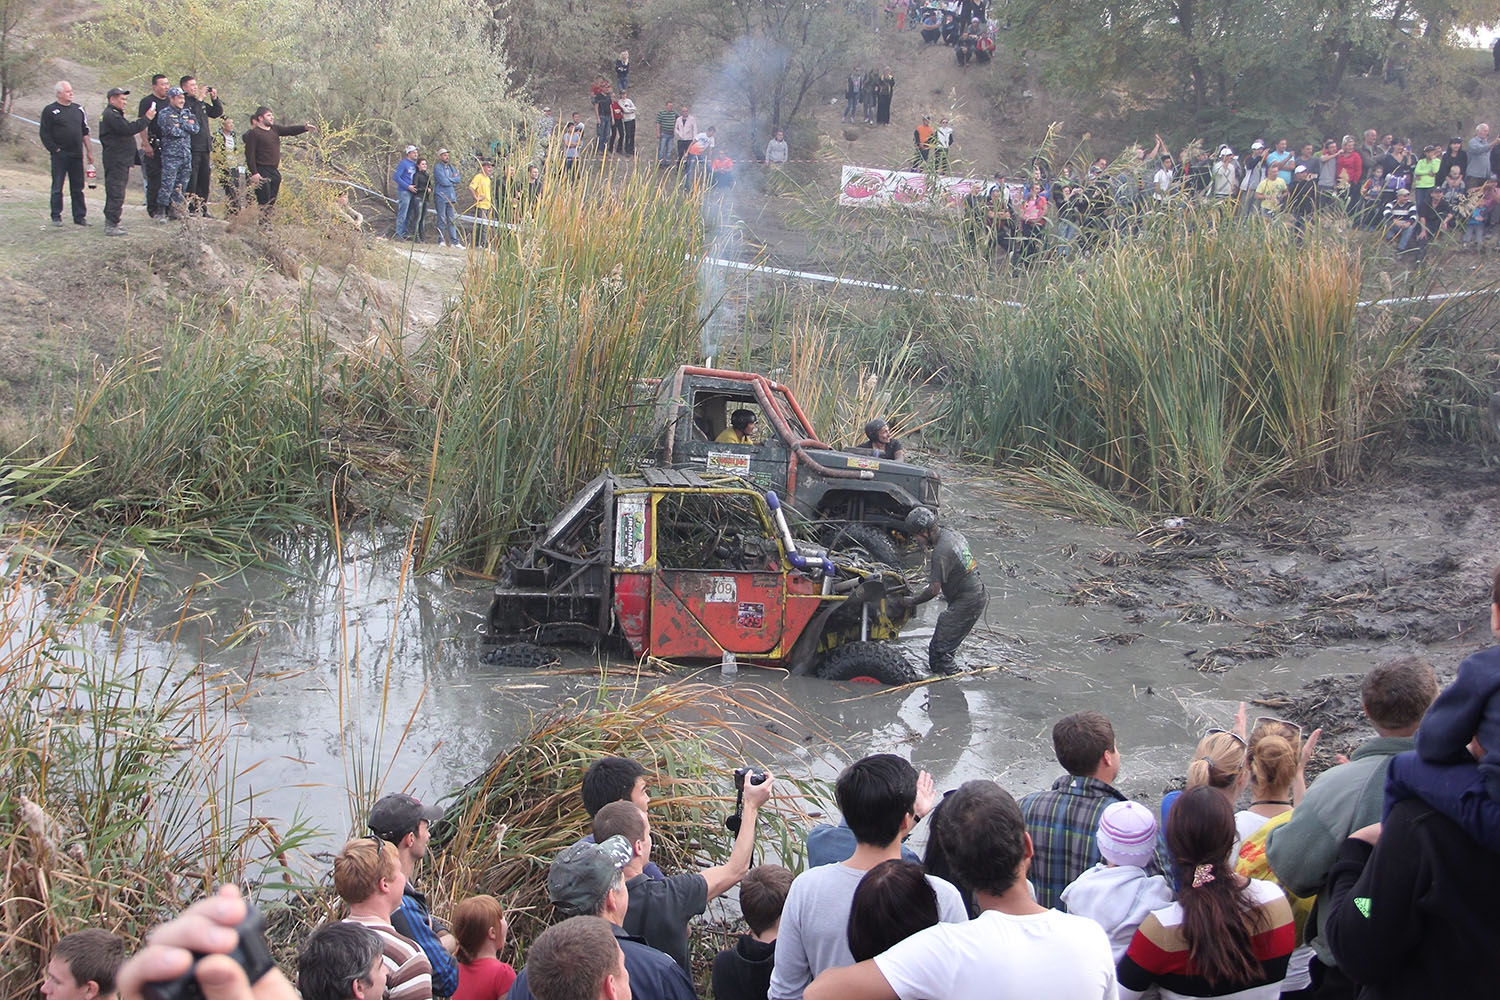 Off-road гонки в Киргизии: грязь, болота и адреналин